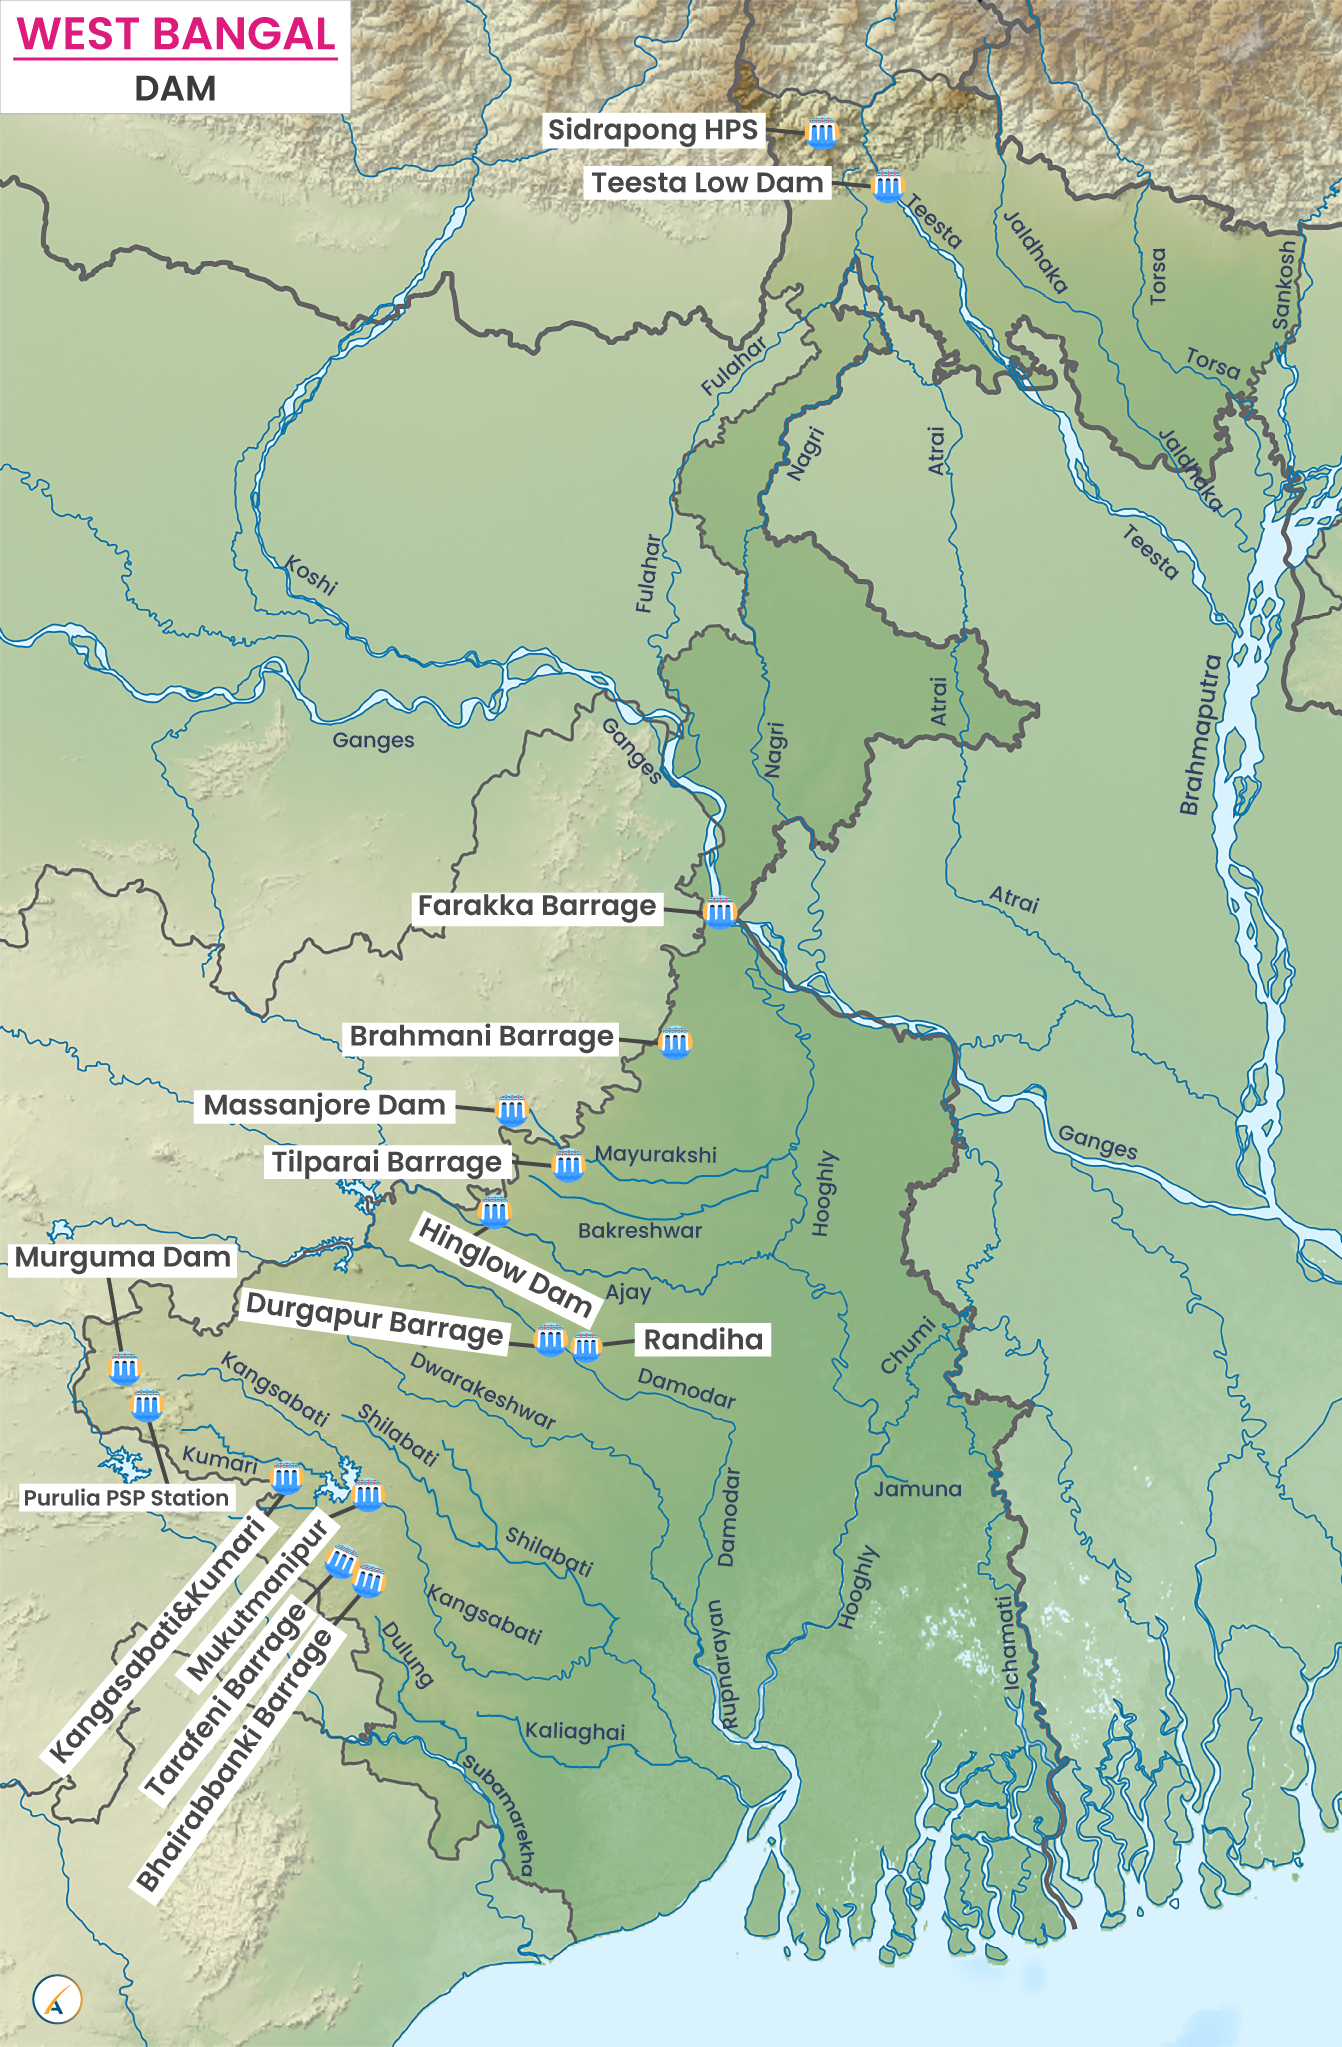 Major Dams in West Bengal